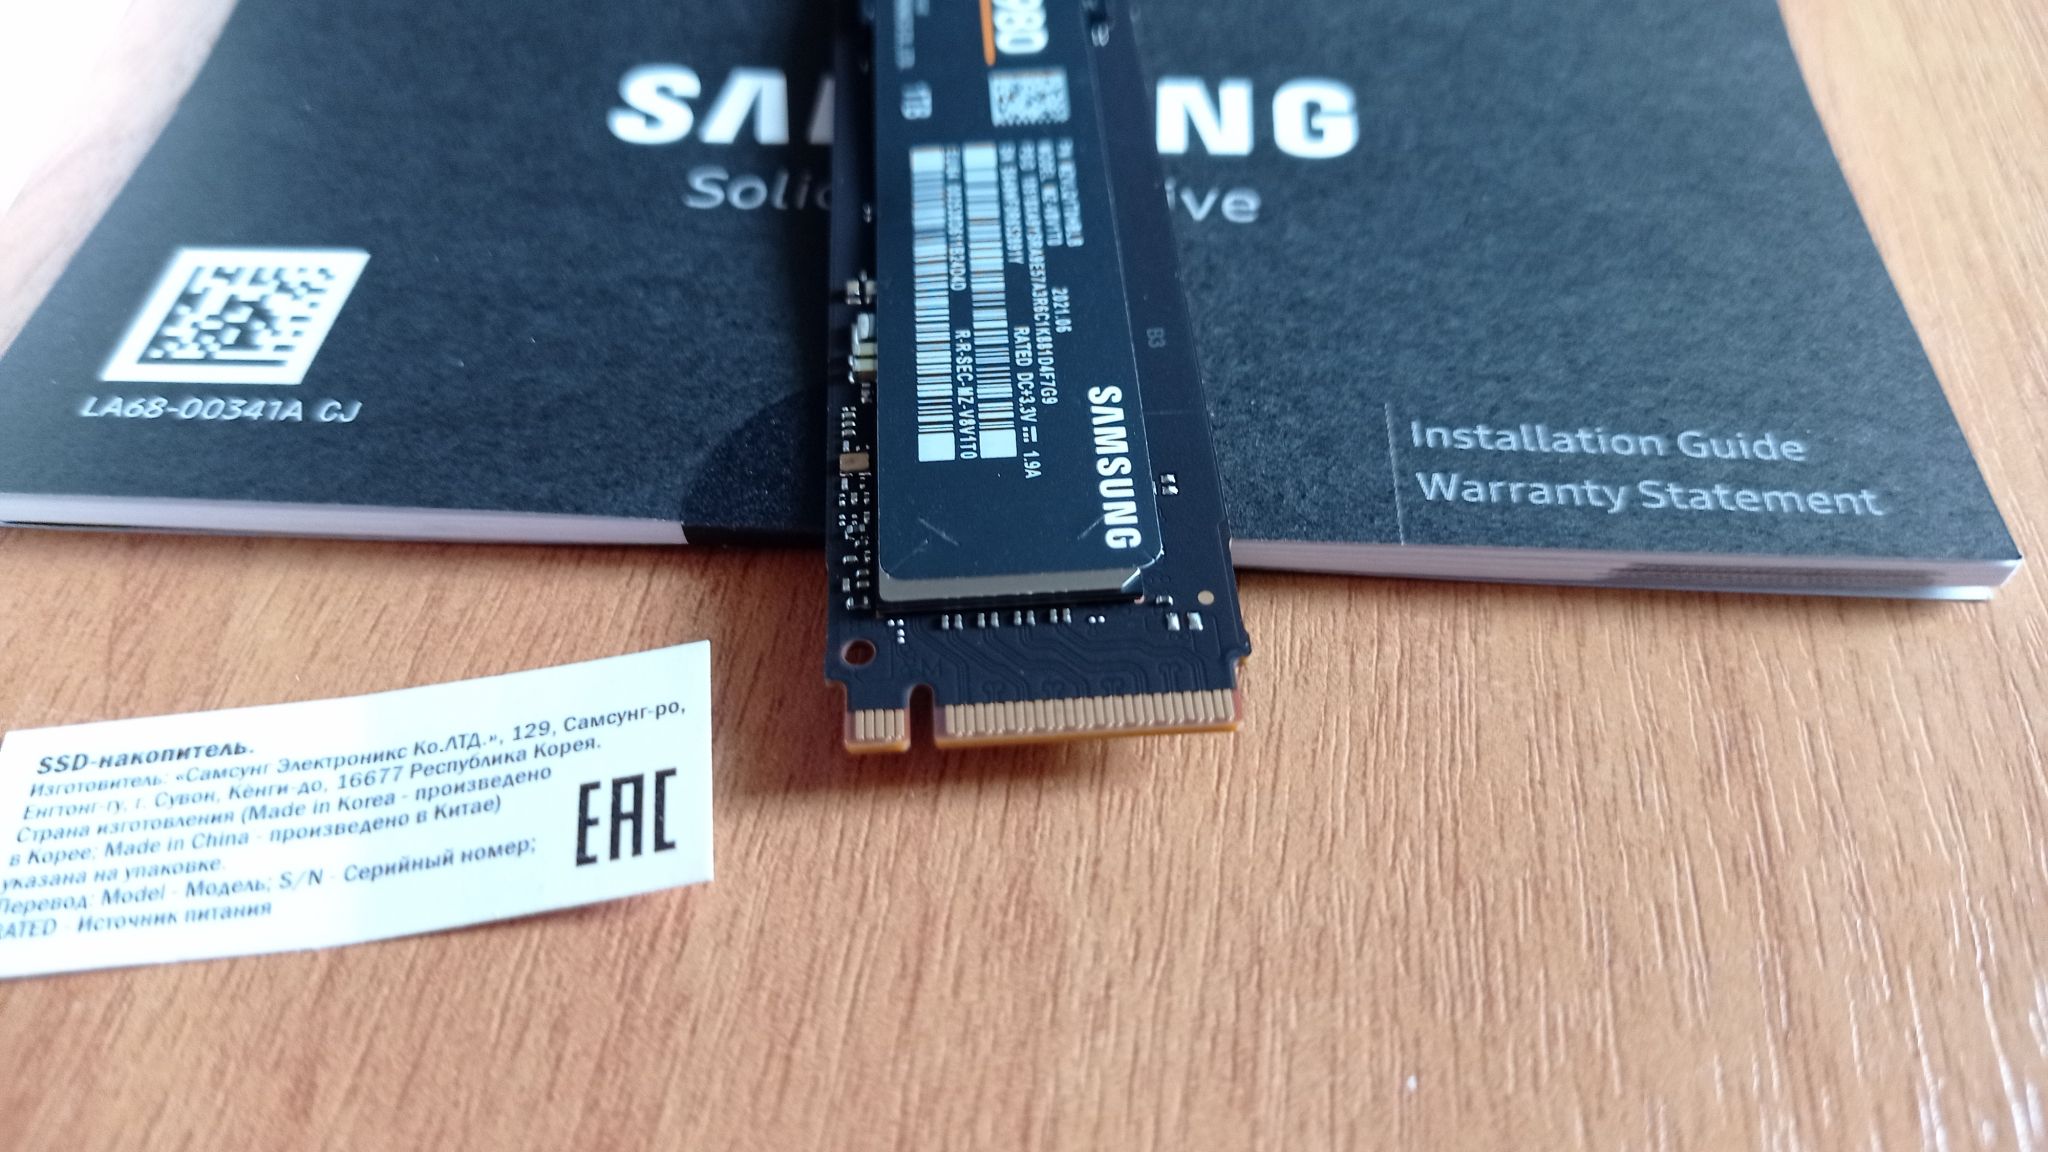 Ssd mz v8v1t0bw. Samsung SSD 980. SSD Samsung 980 MZ v8v1t0bw. 1000 ГБ SSD M.2 накопитель Samsung 980 [MZ-v8v1t0bw]. Samsung SSD m2 коробка.